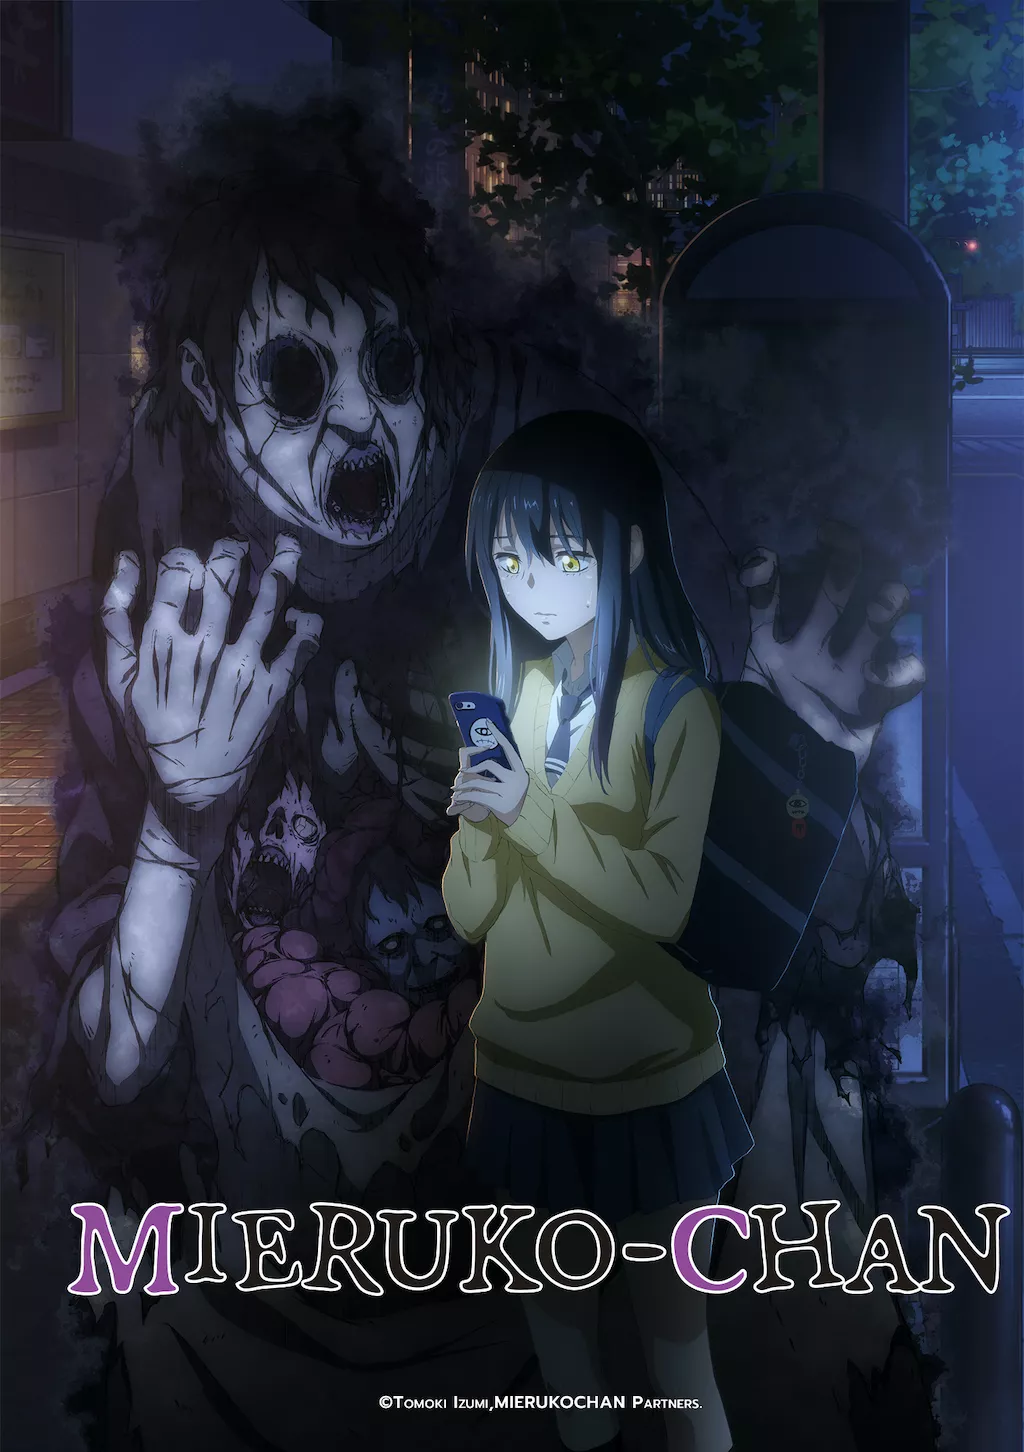 Best Anime For Slasher Horror Fans